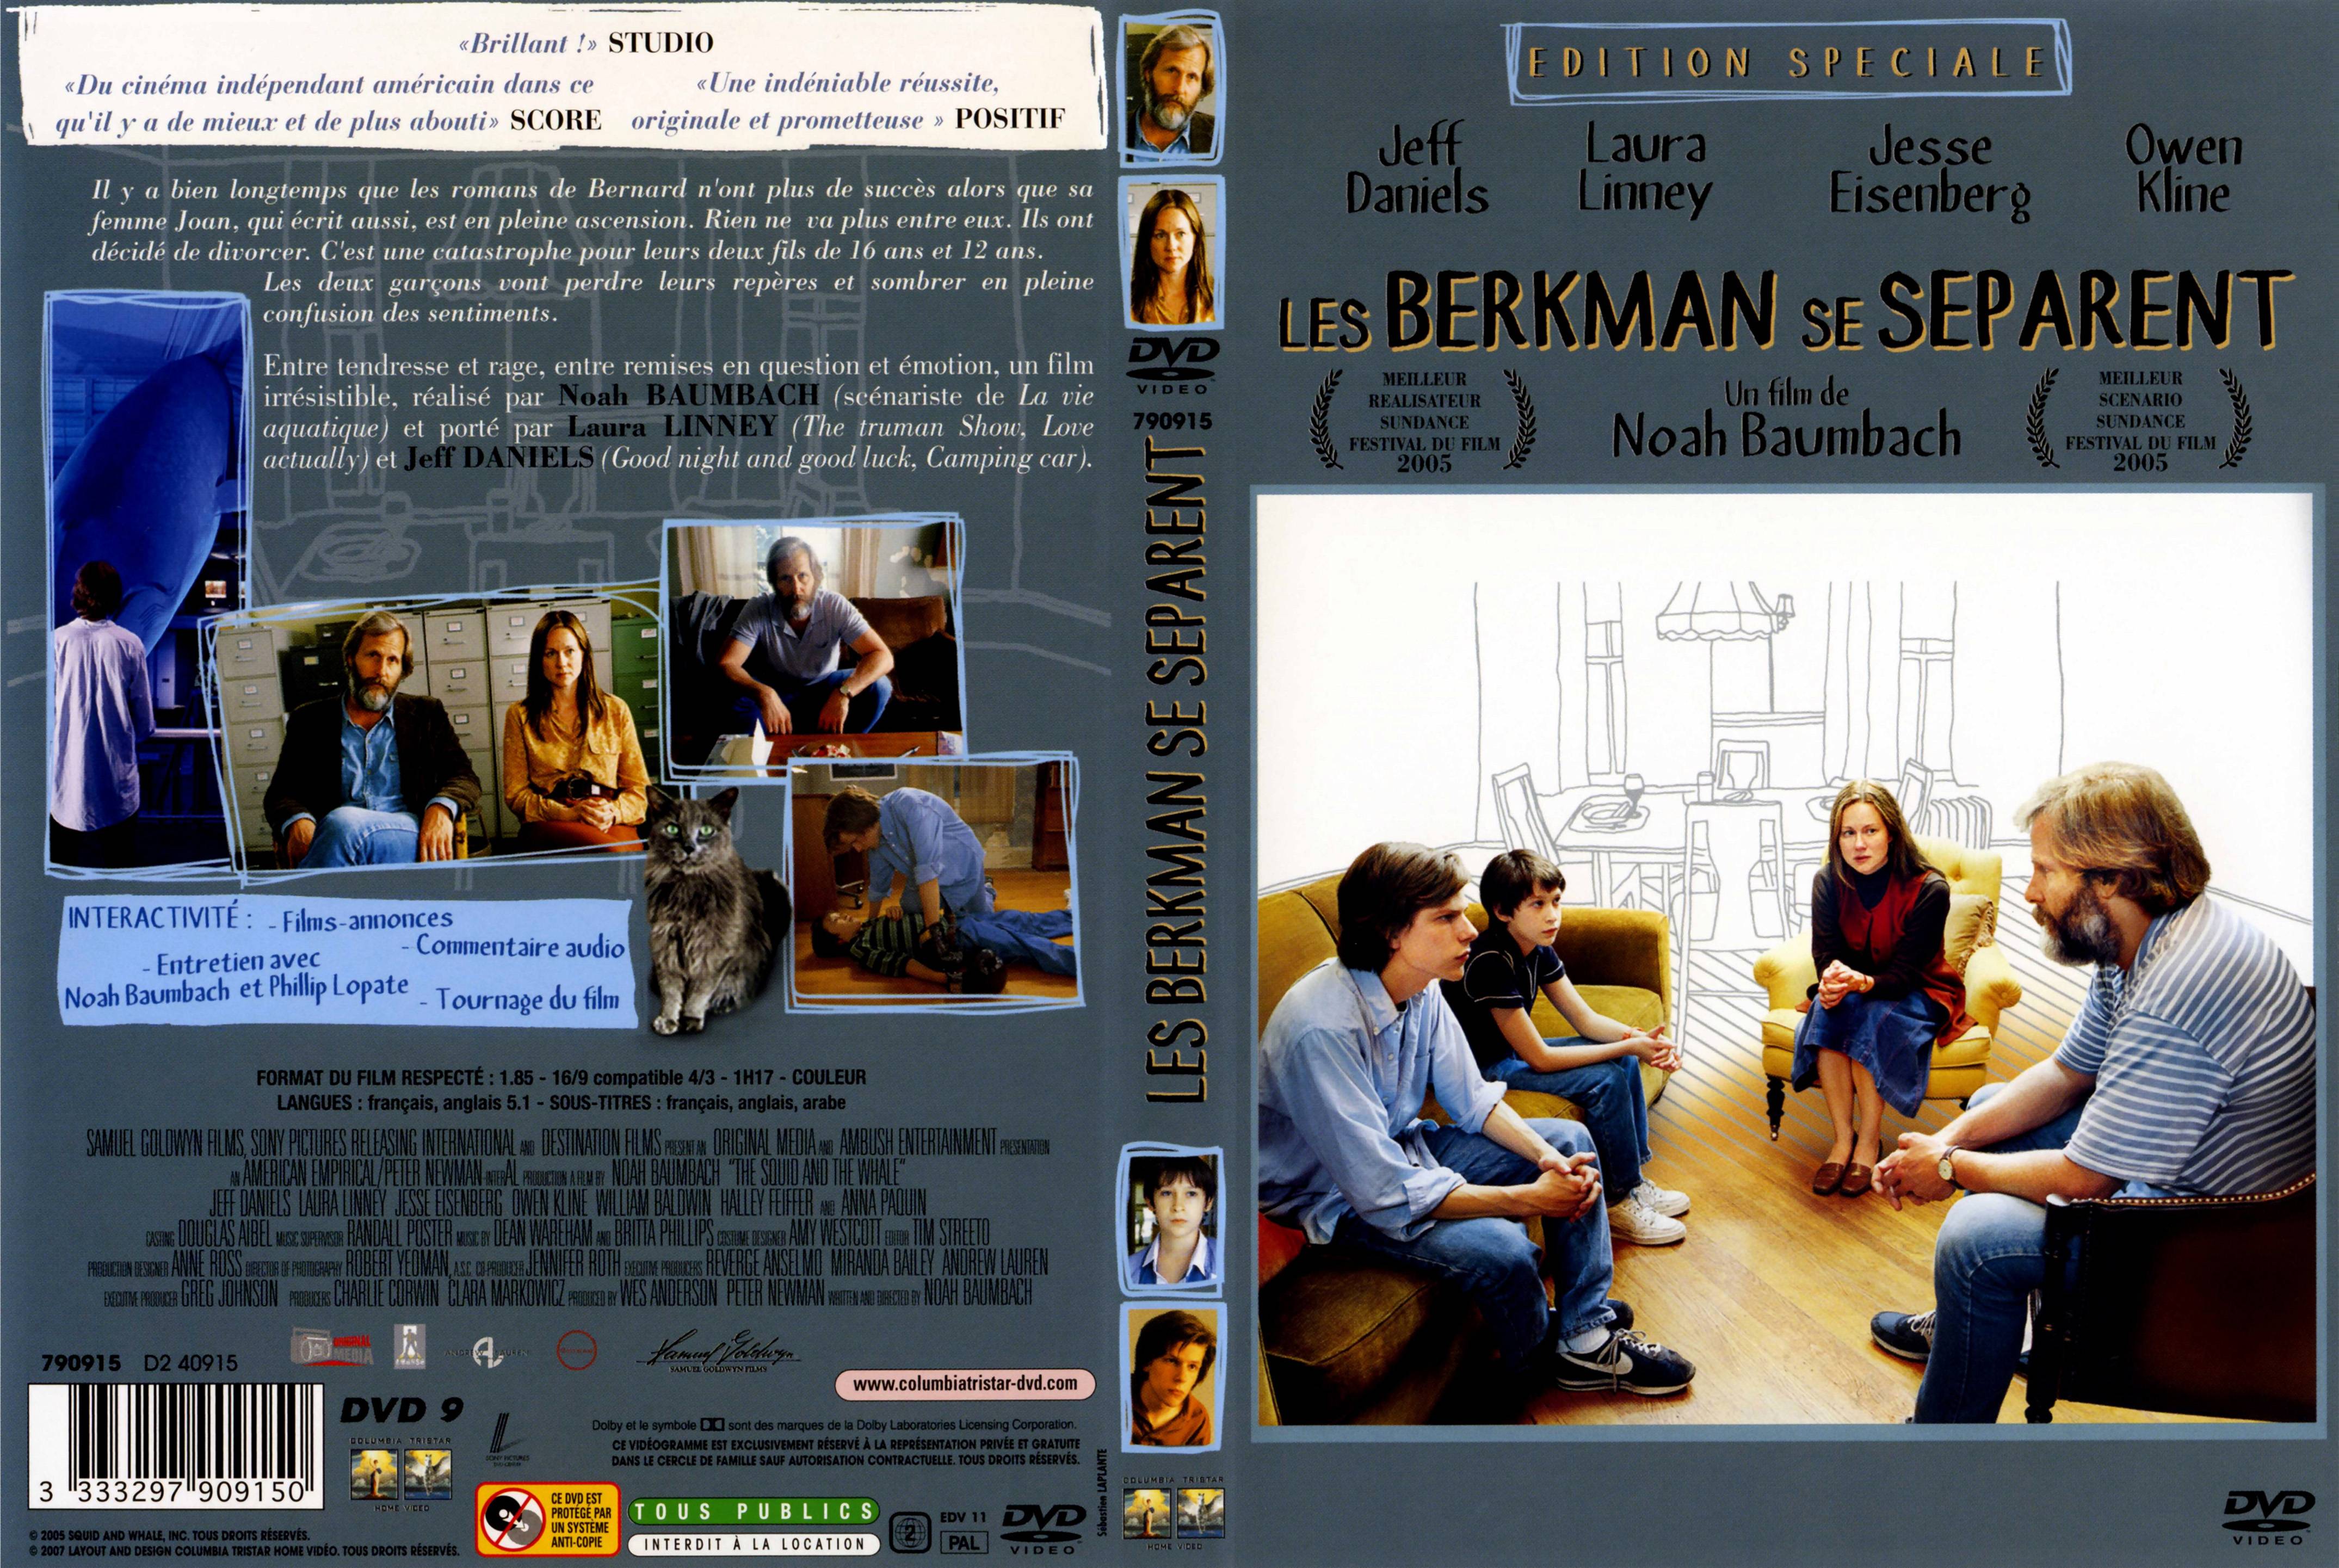 Jaquette DVD Les Berkman se sparent v2